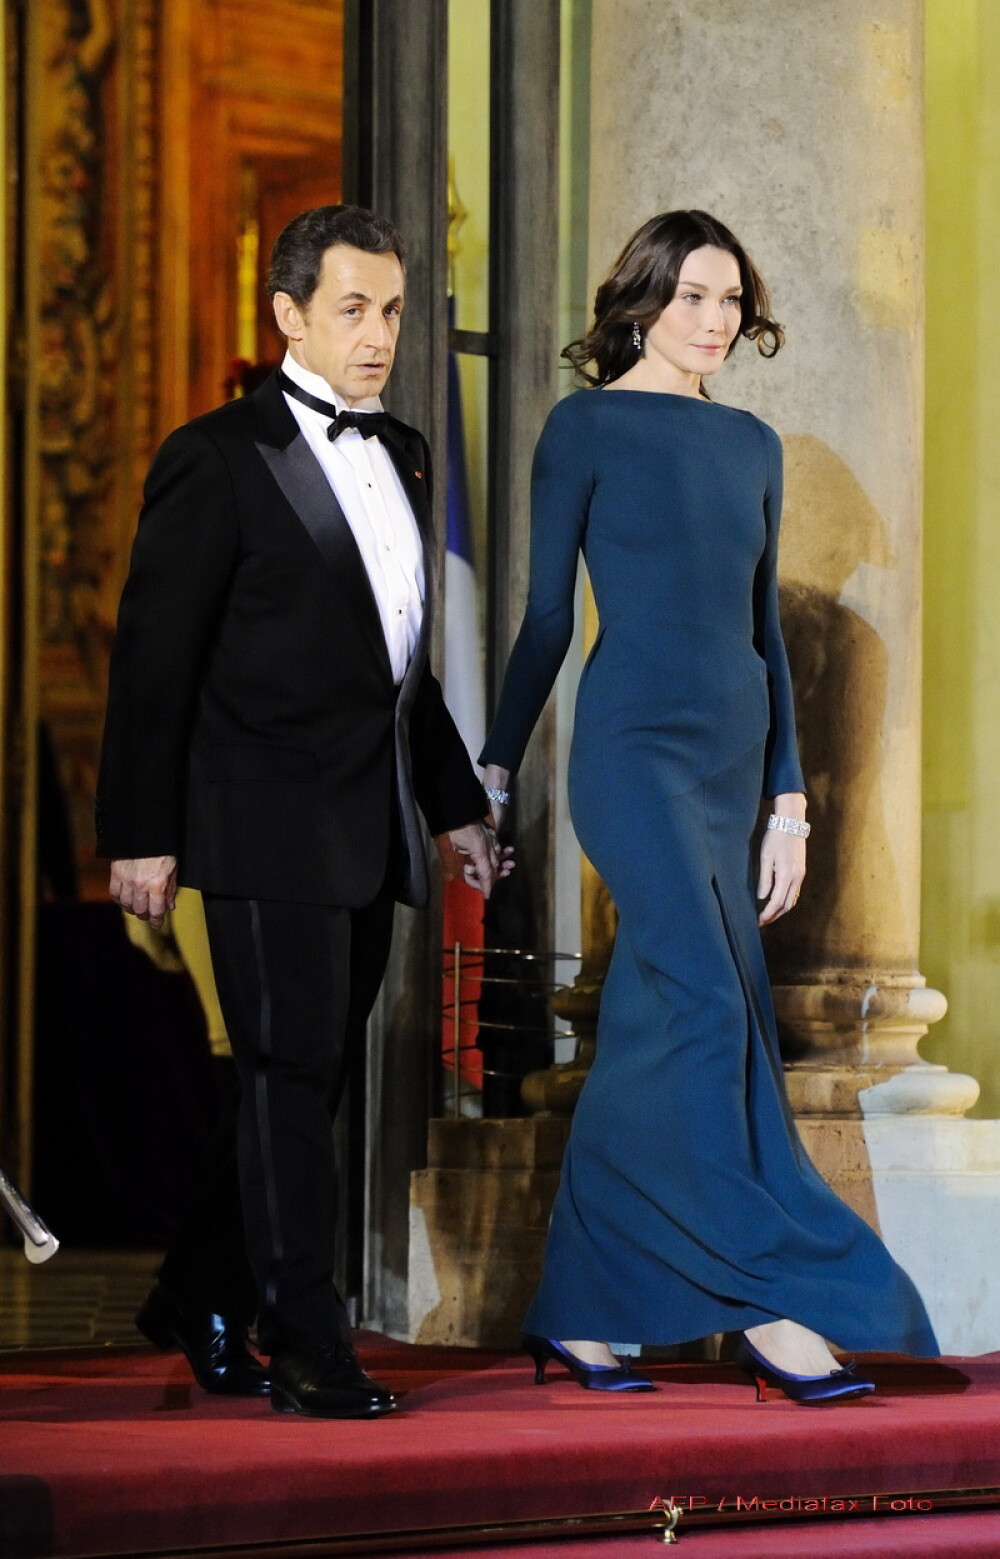 Impreuna, dar separati! Carla Bruni, Nicolas Sarkozy si… amantii lor! - Imaginea 1